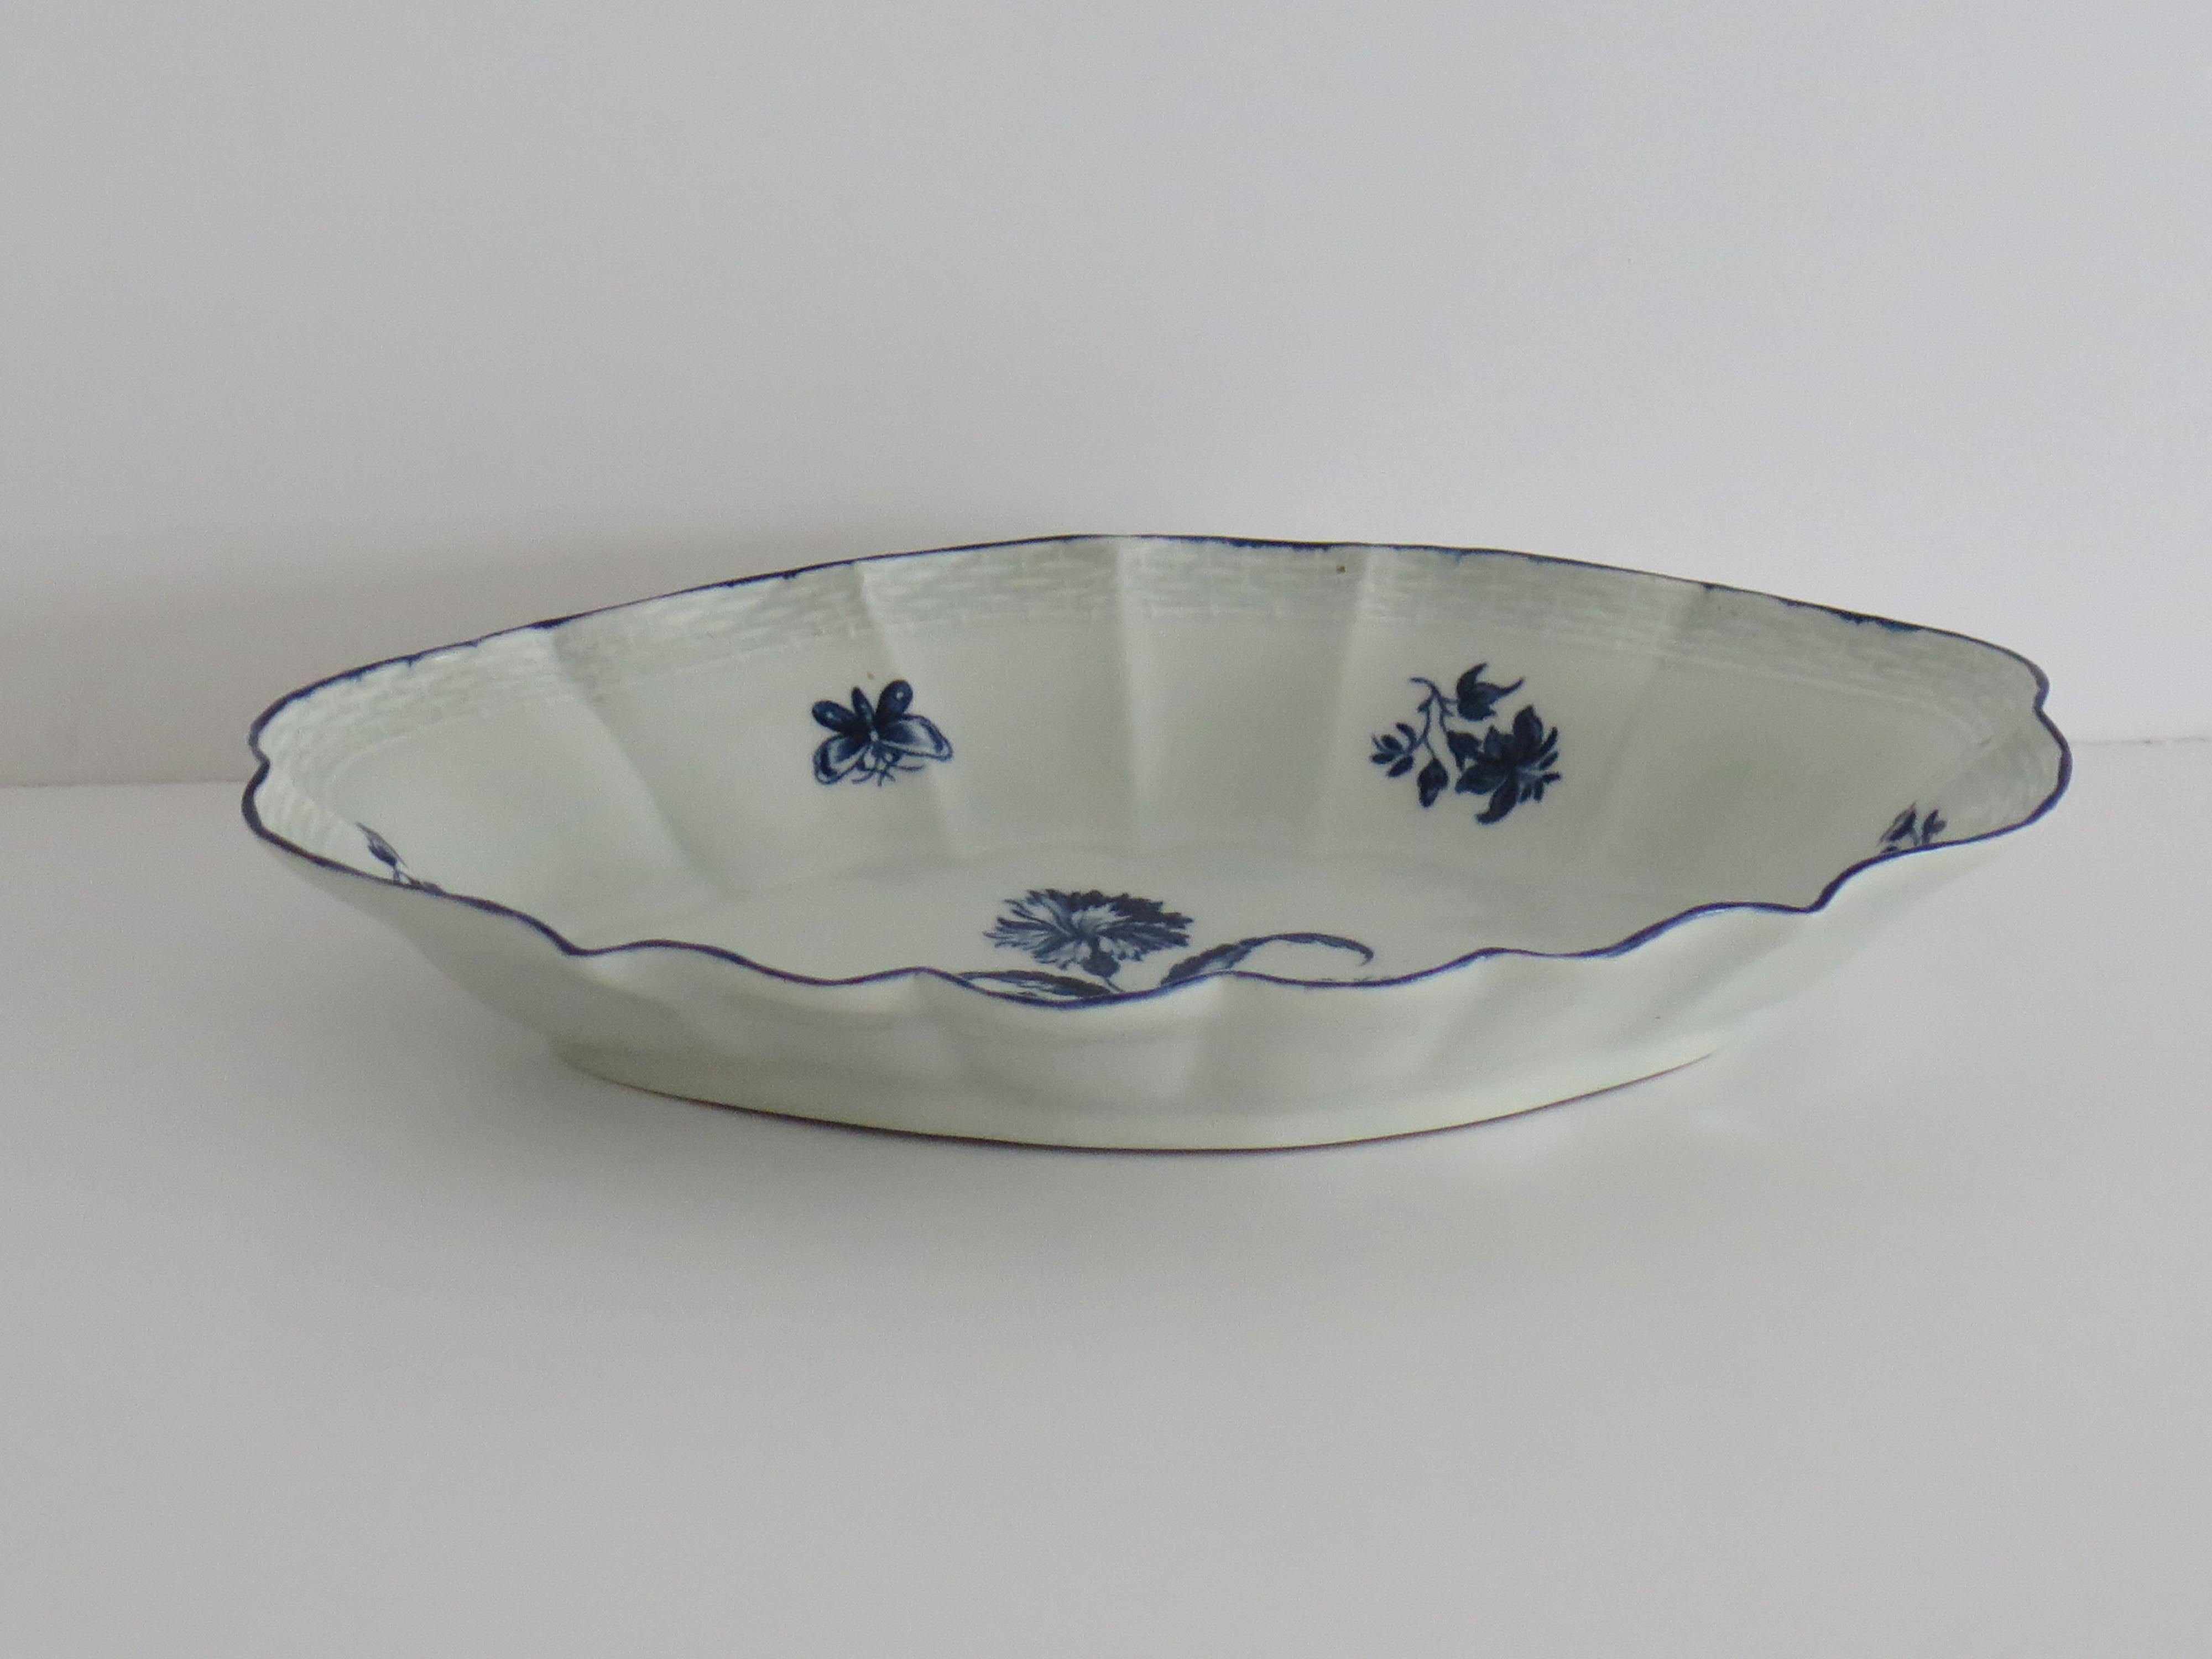 Dies ist eine sehr gute frühe, erste Periode (Dr. Wall), Worcester Porzellan offen Desert Dish in einem tiefen Kobaltblau floralem Muster mit einem Crescent Marke auf die Basis. aus dem Jahr 1765 bis 1770.

Es handelt sich um ein gut getöpfertes,